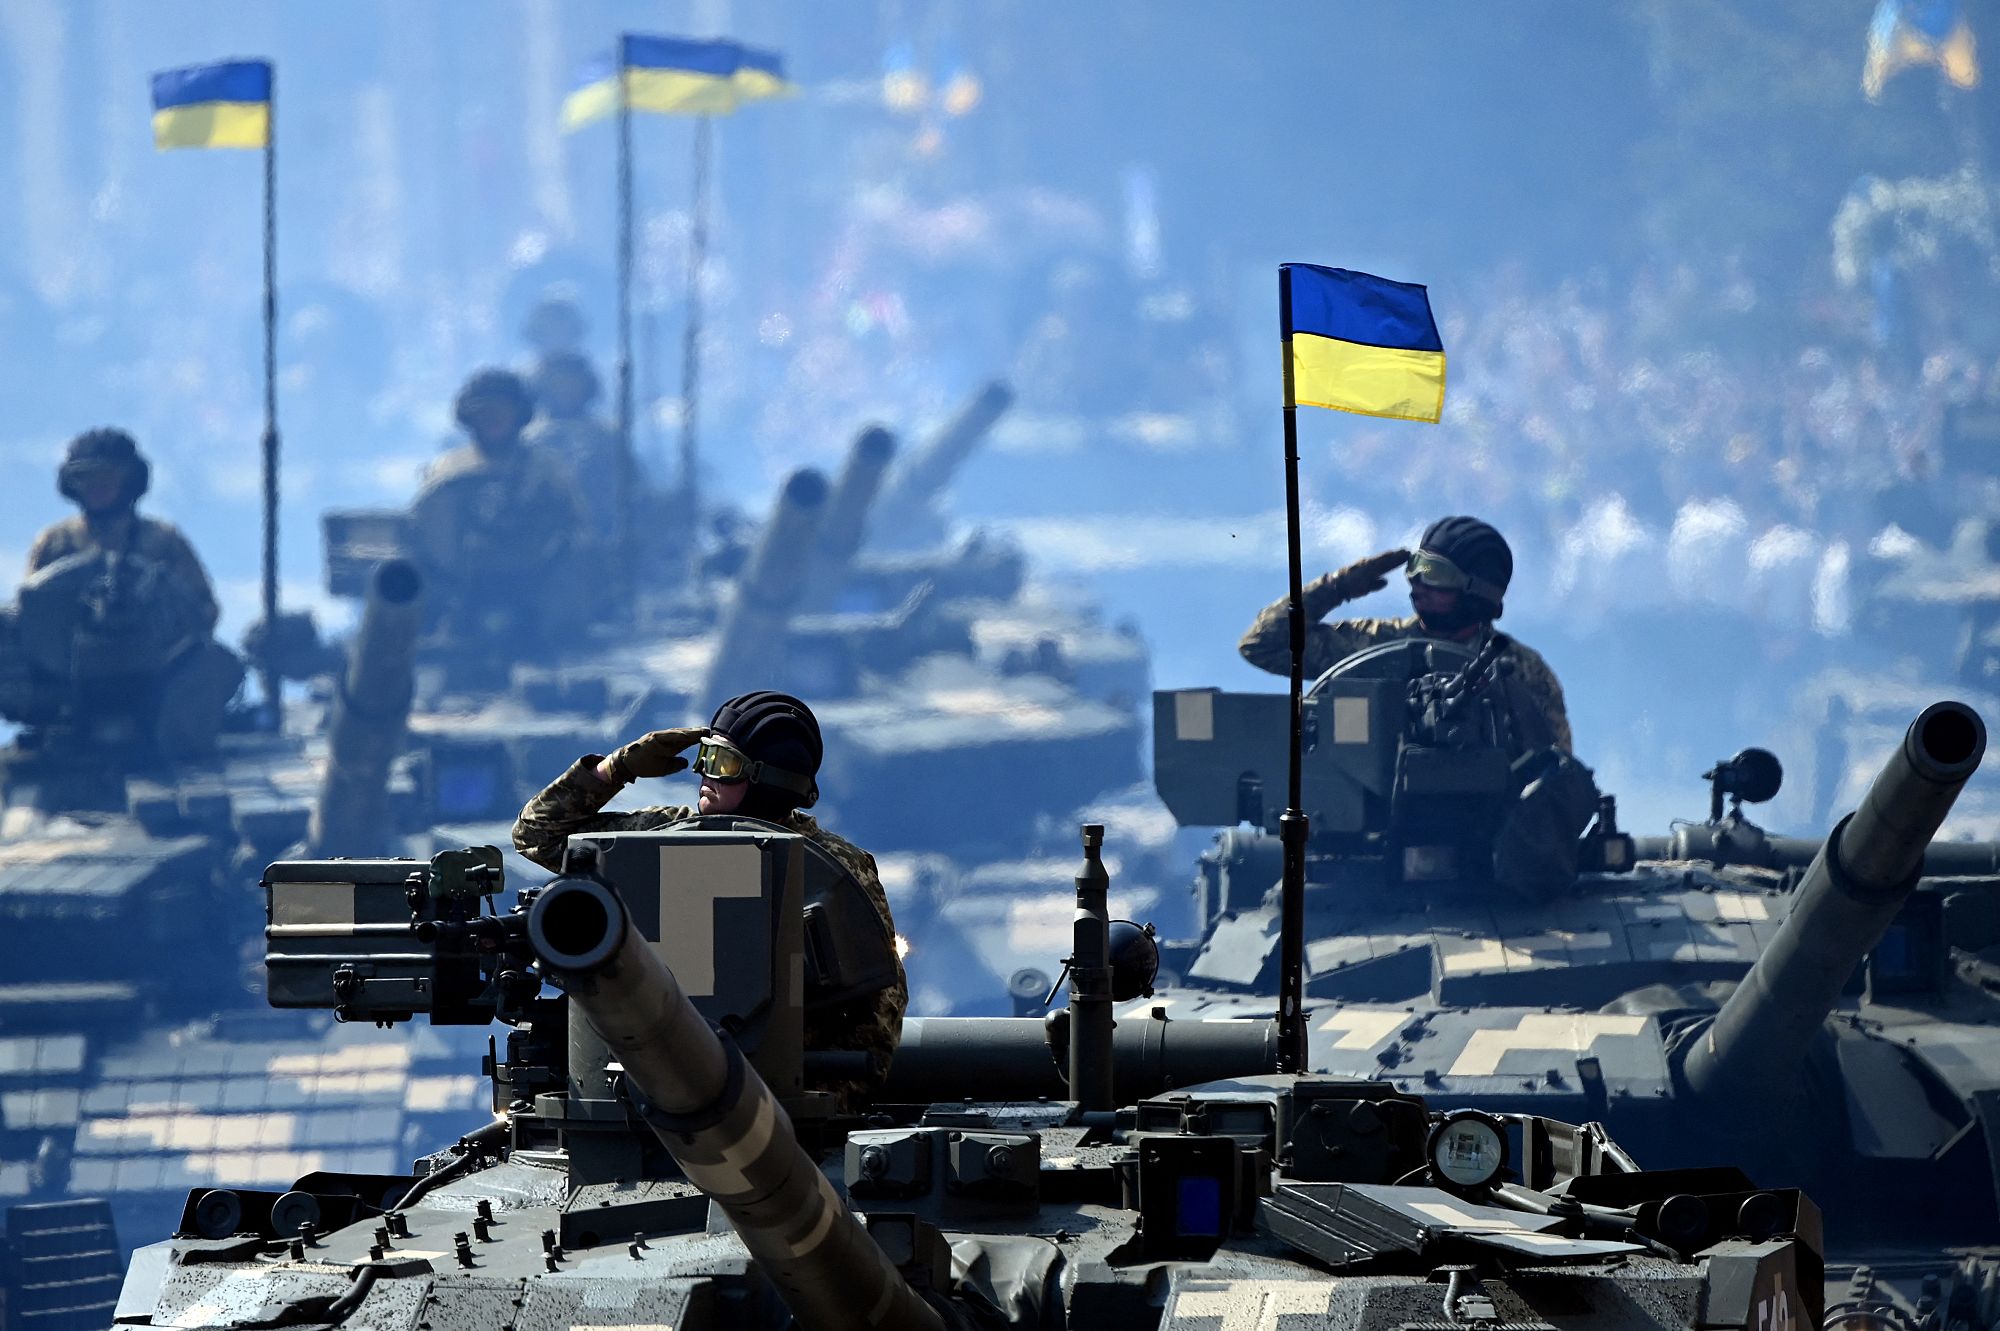 ukrainian army parade